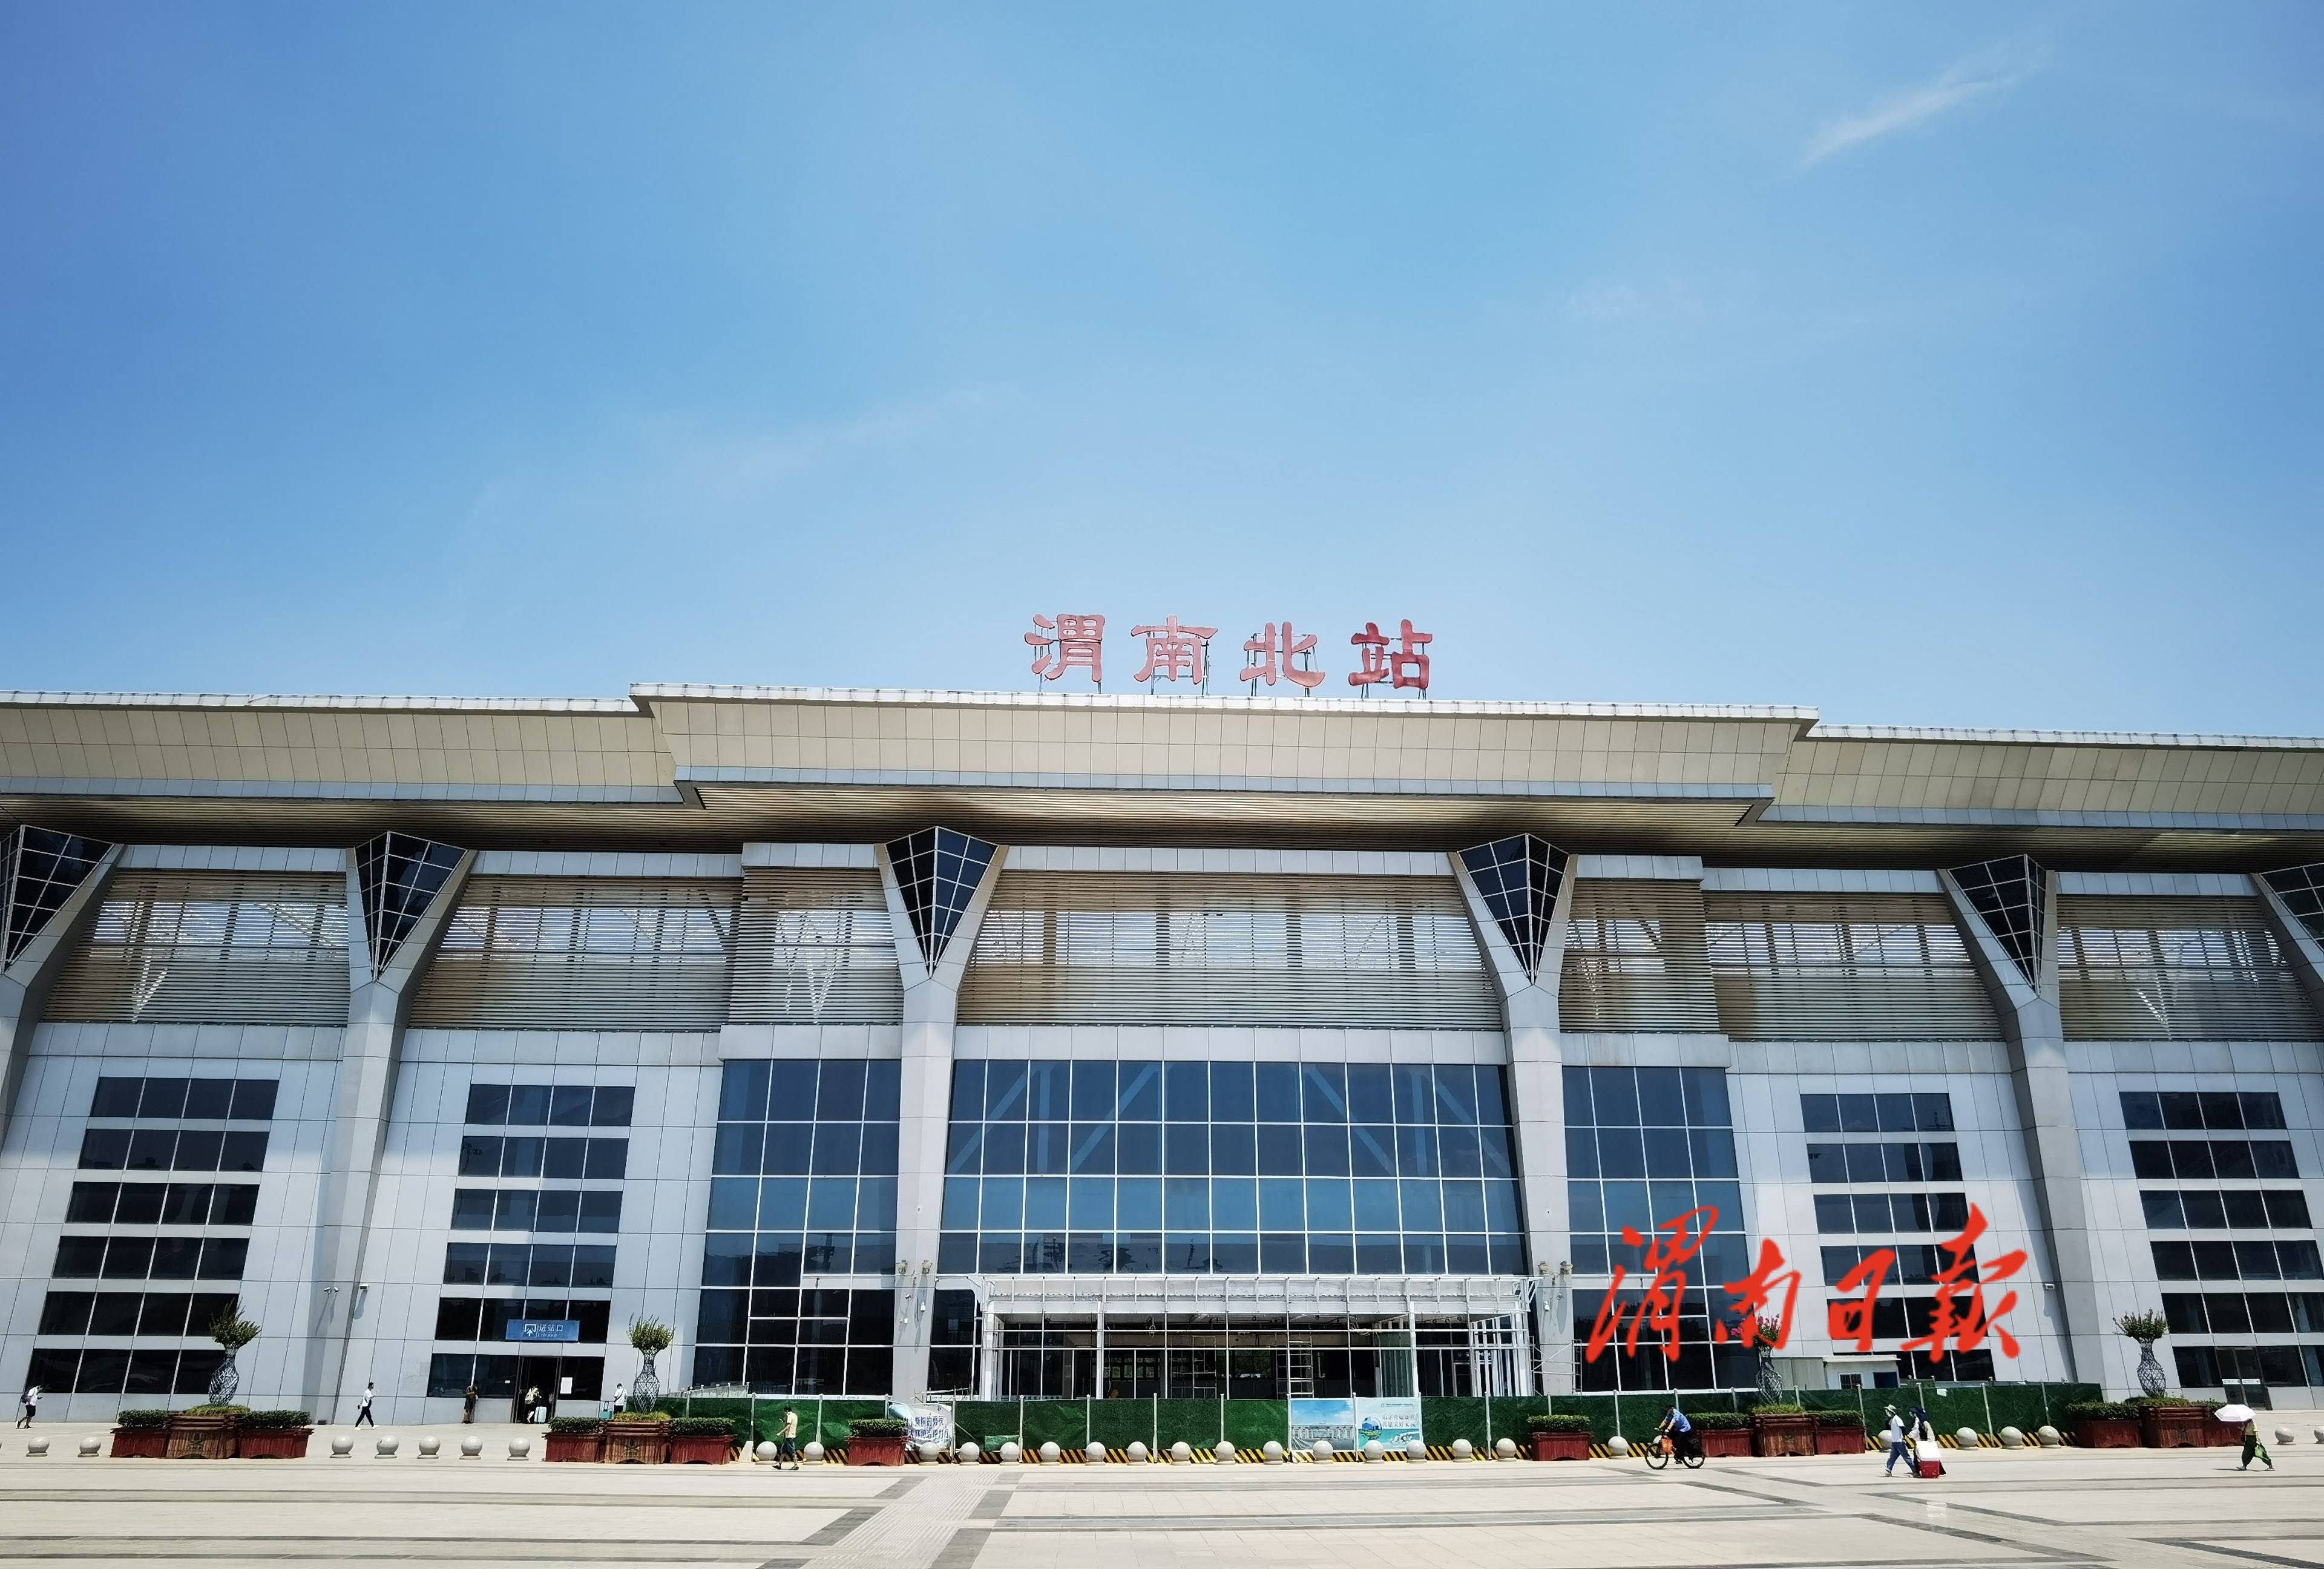 渭南北站推出暑运便民服务措施